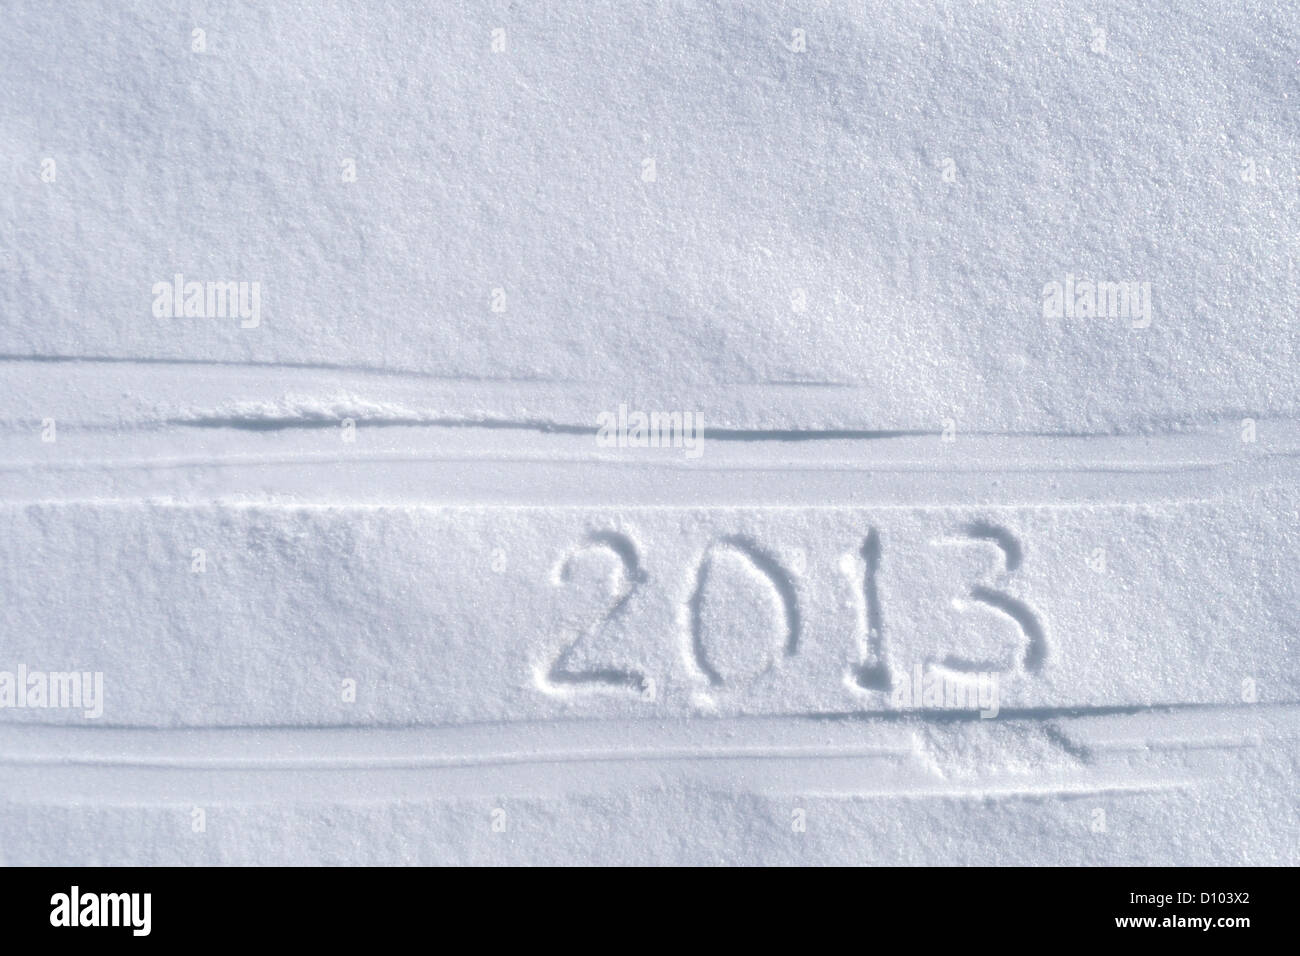 2013 Texte écrit entre les pistes de ski Banque D'Images